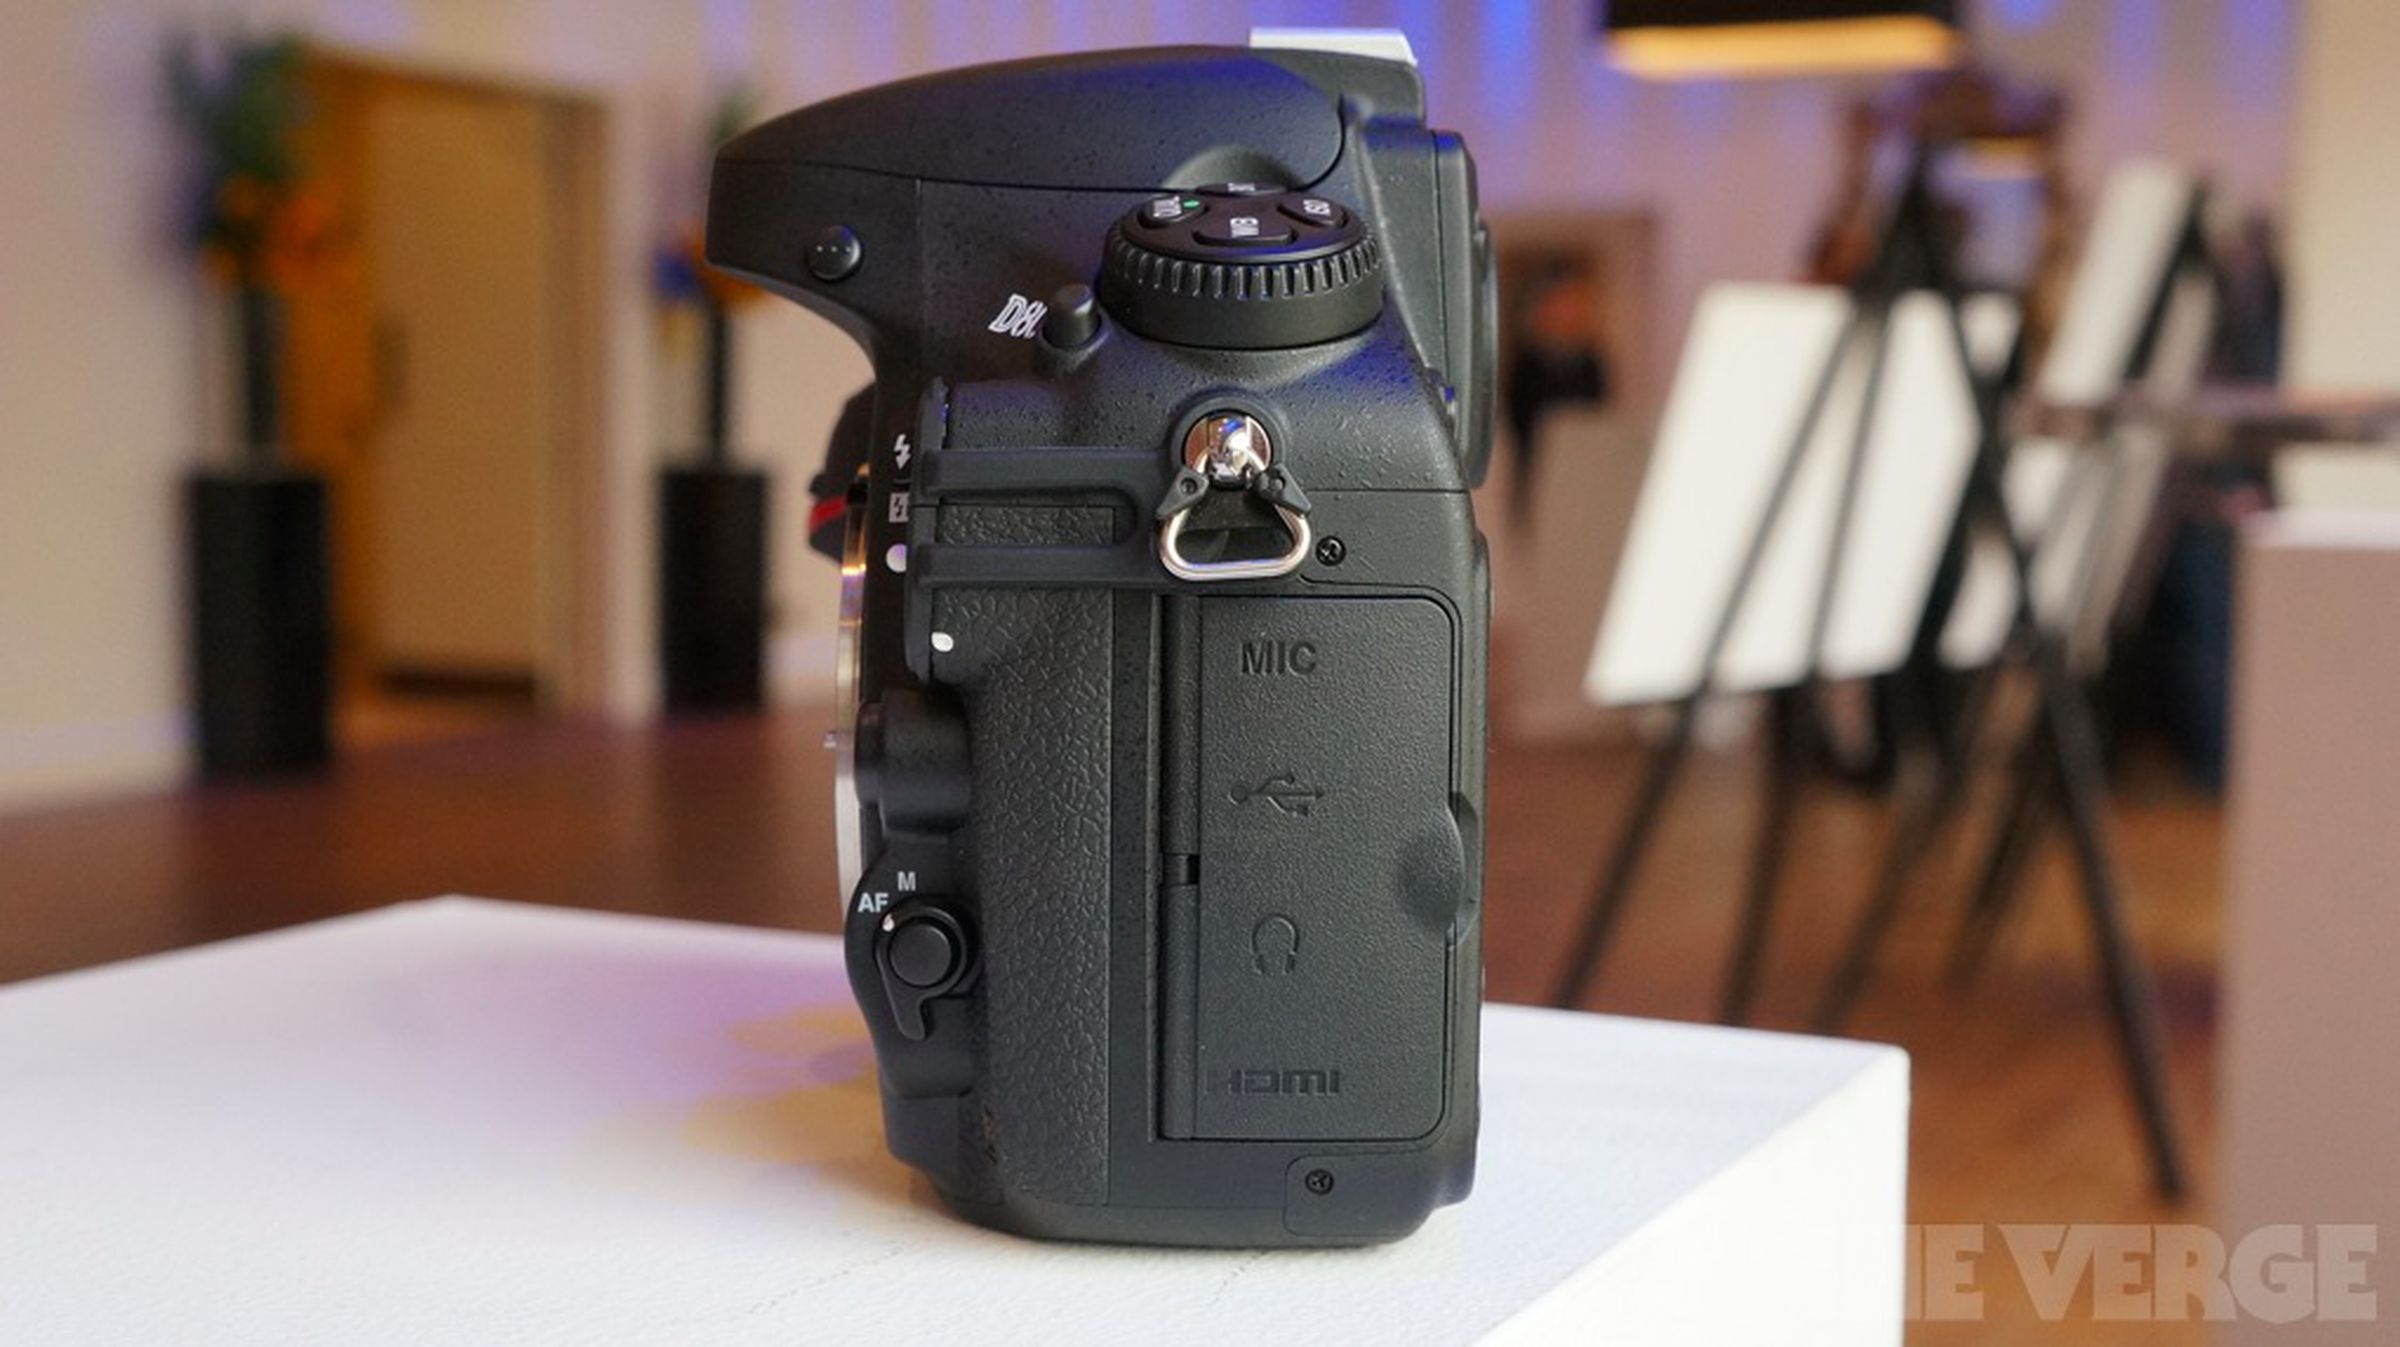 Nikon D800 hands-on photos